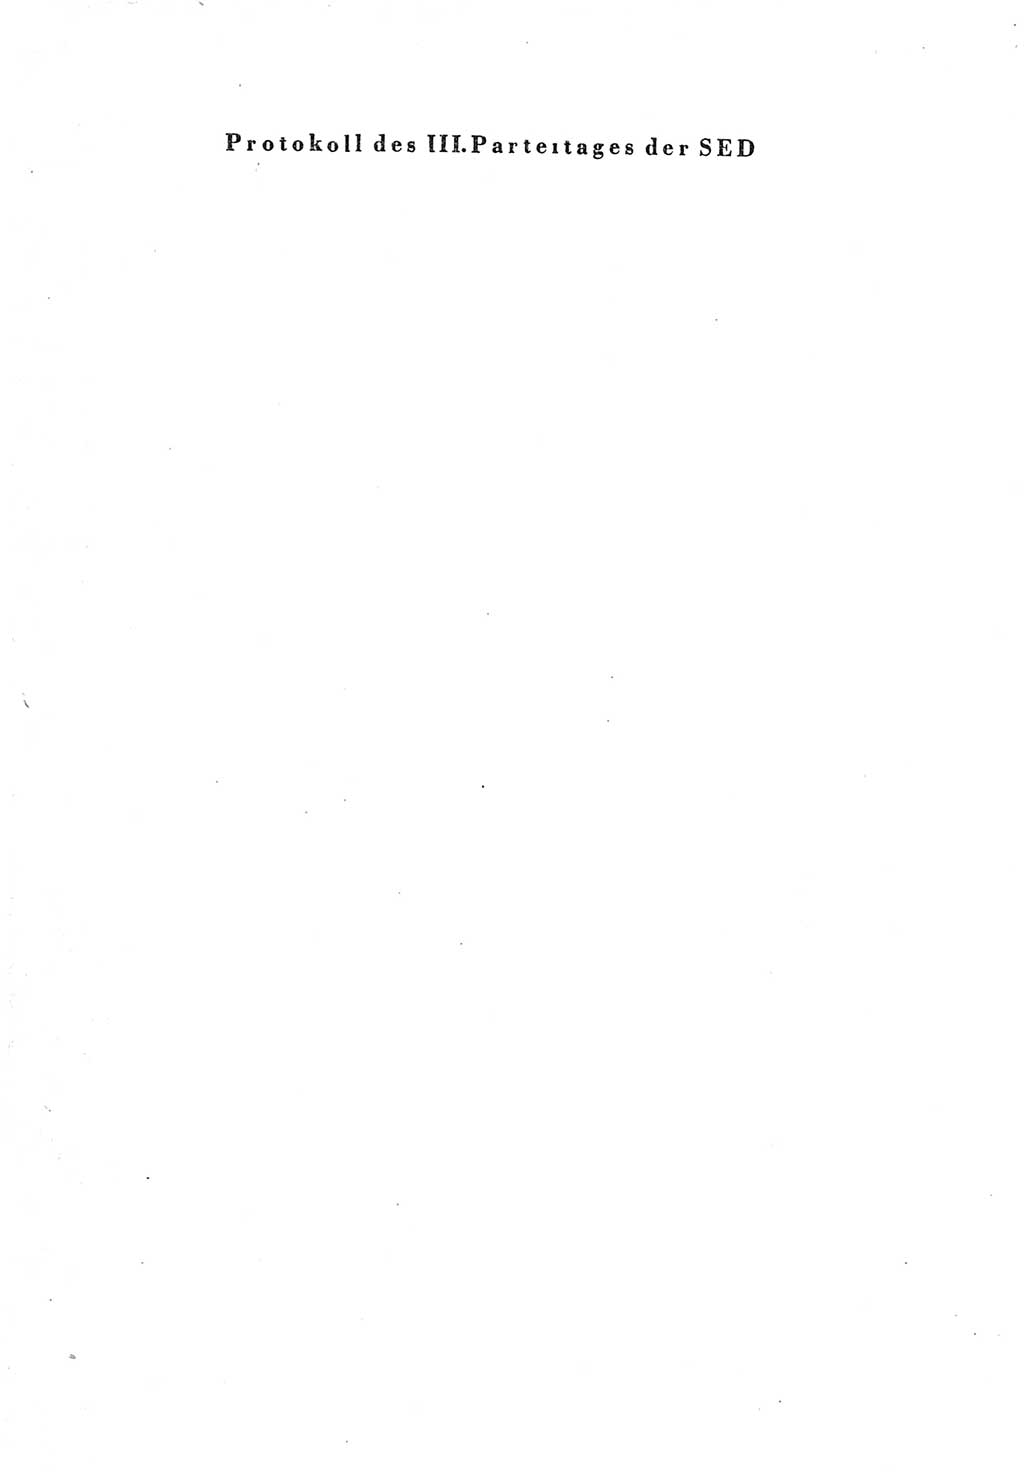 Protokoll der Verhandlungen des Ⅲ. Parteitages der Sozialistischen Einheitspartei Deutschlands (SED) [Deutsche Demokratische Republik (DDR)] 1950, Band 1, Seite 1 (Prot. Verh. Ⅲ. PT SED DDR 1950, Bd. 1, S. 1)